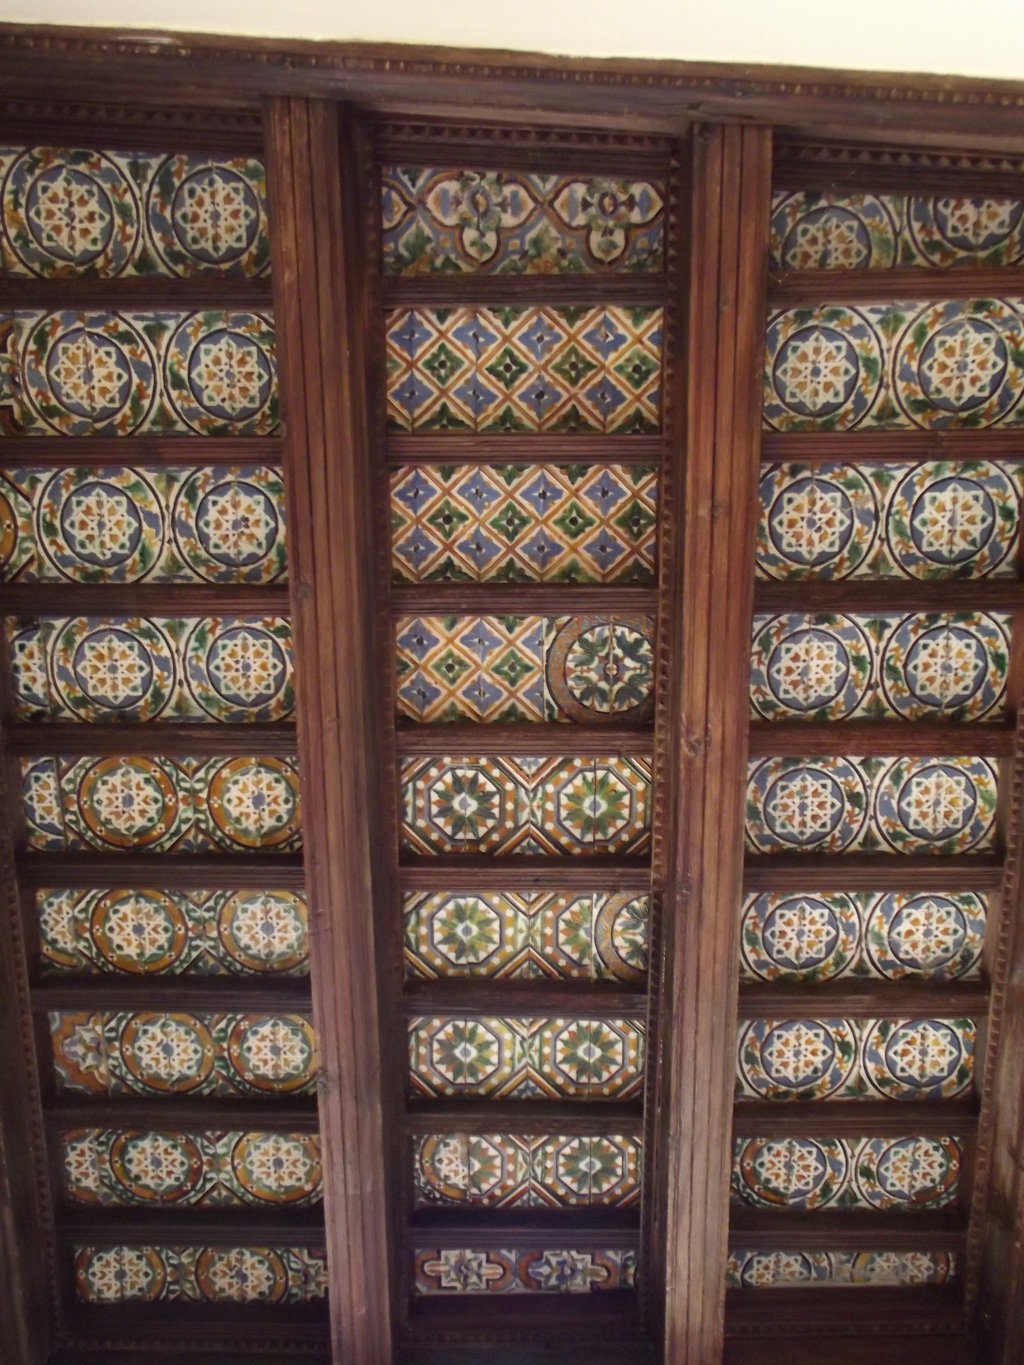 00662. Techo de azulejos por tabla. Claustro de la celda prioral. Antiguo Monasterio de la Cartuja. Sevilla.